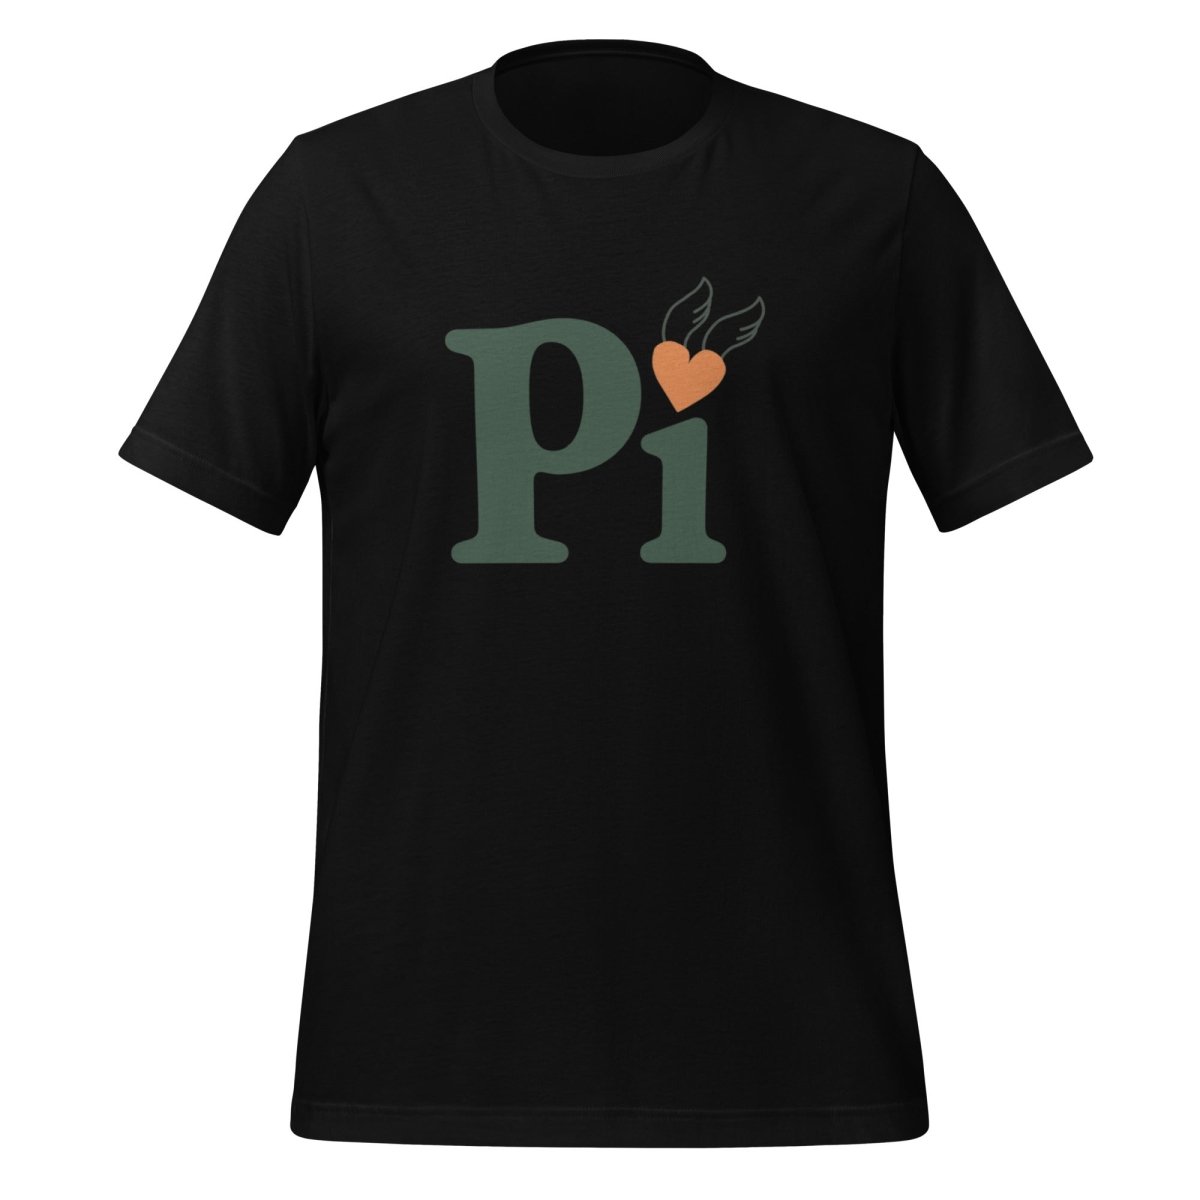 Pi Heart T - Shirt (unisex) - Black - AI Store